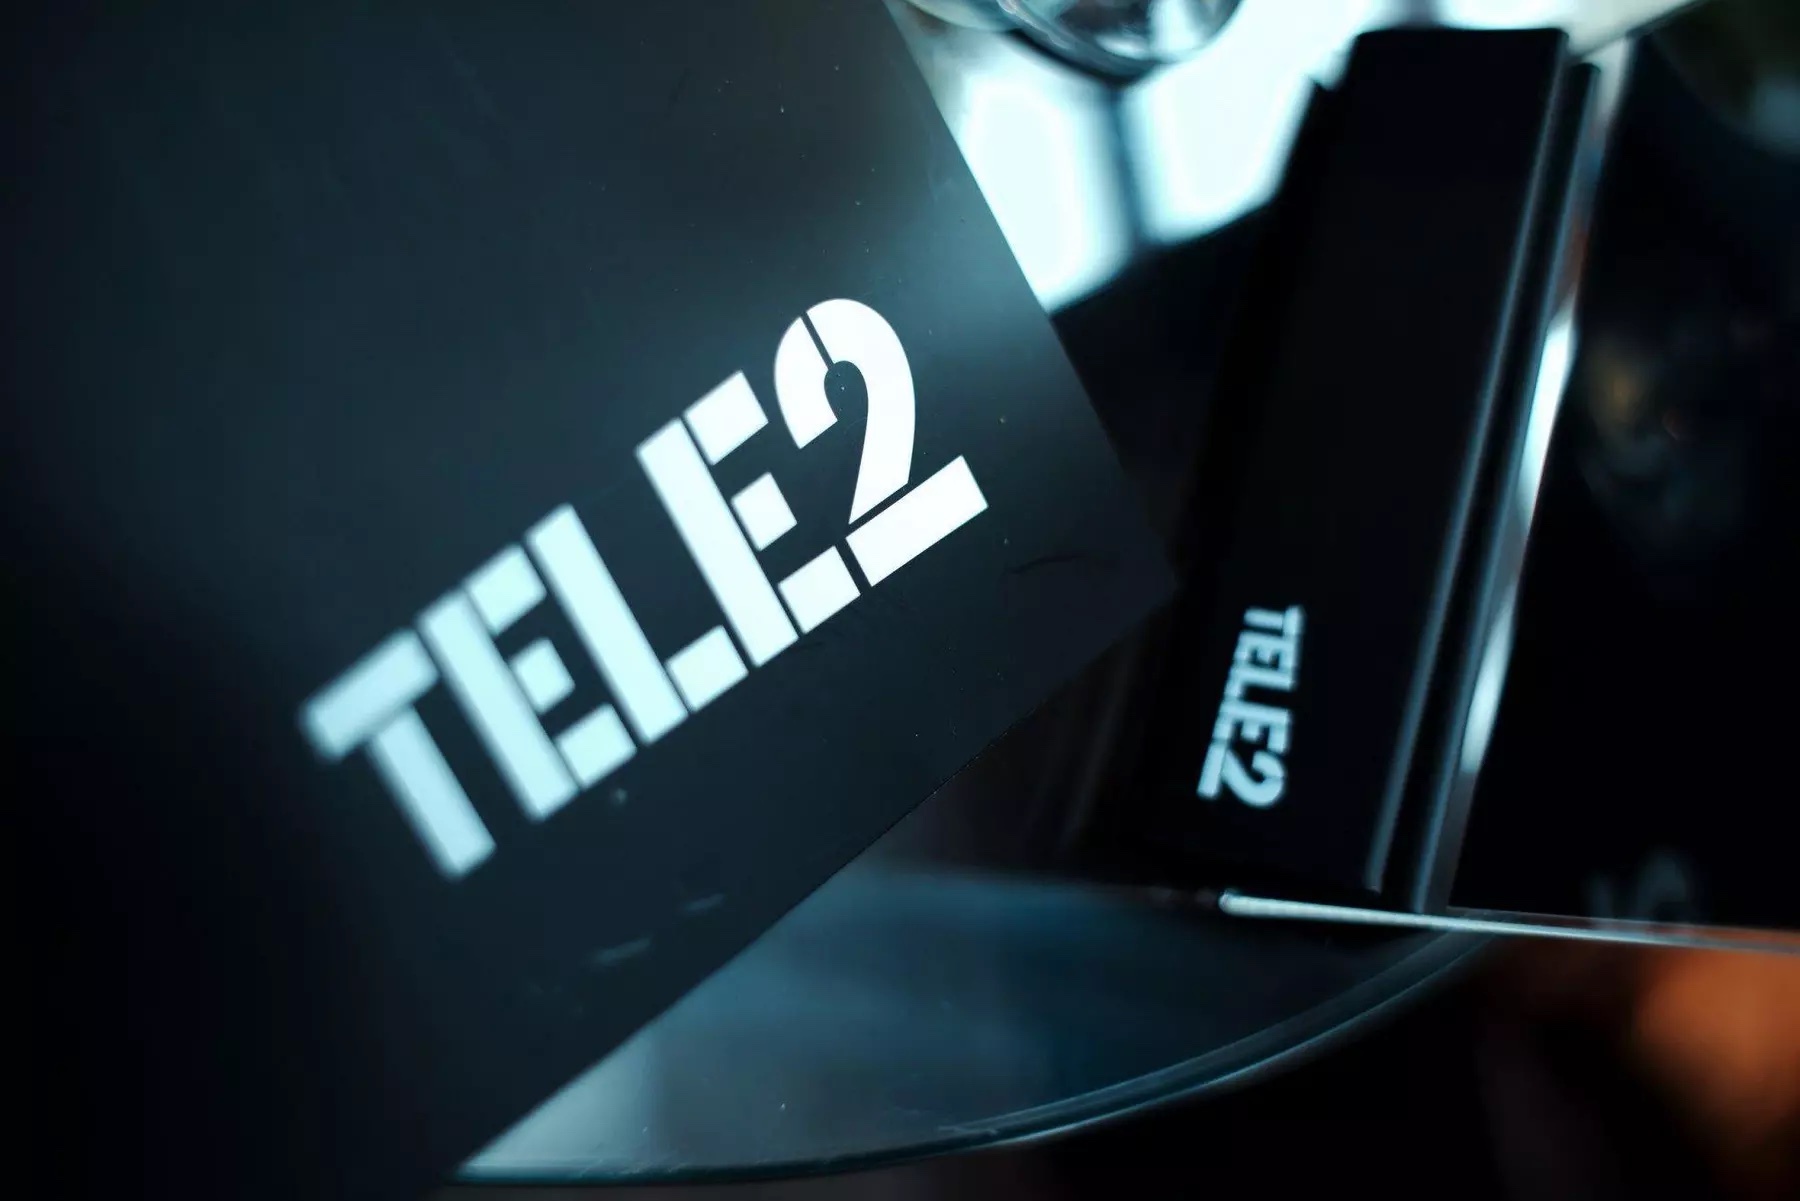  tele2        